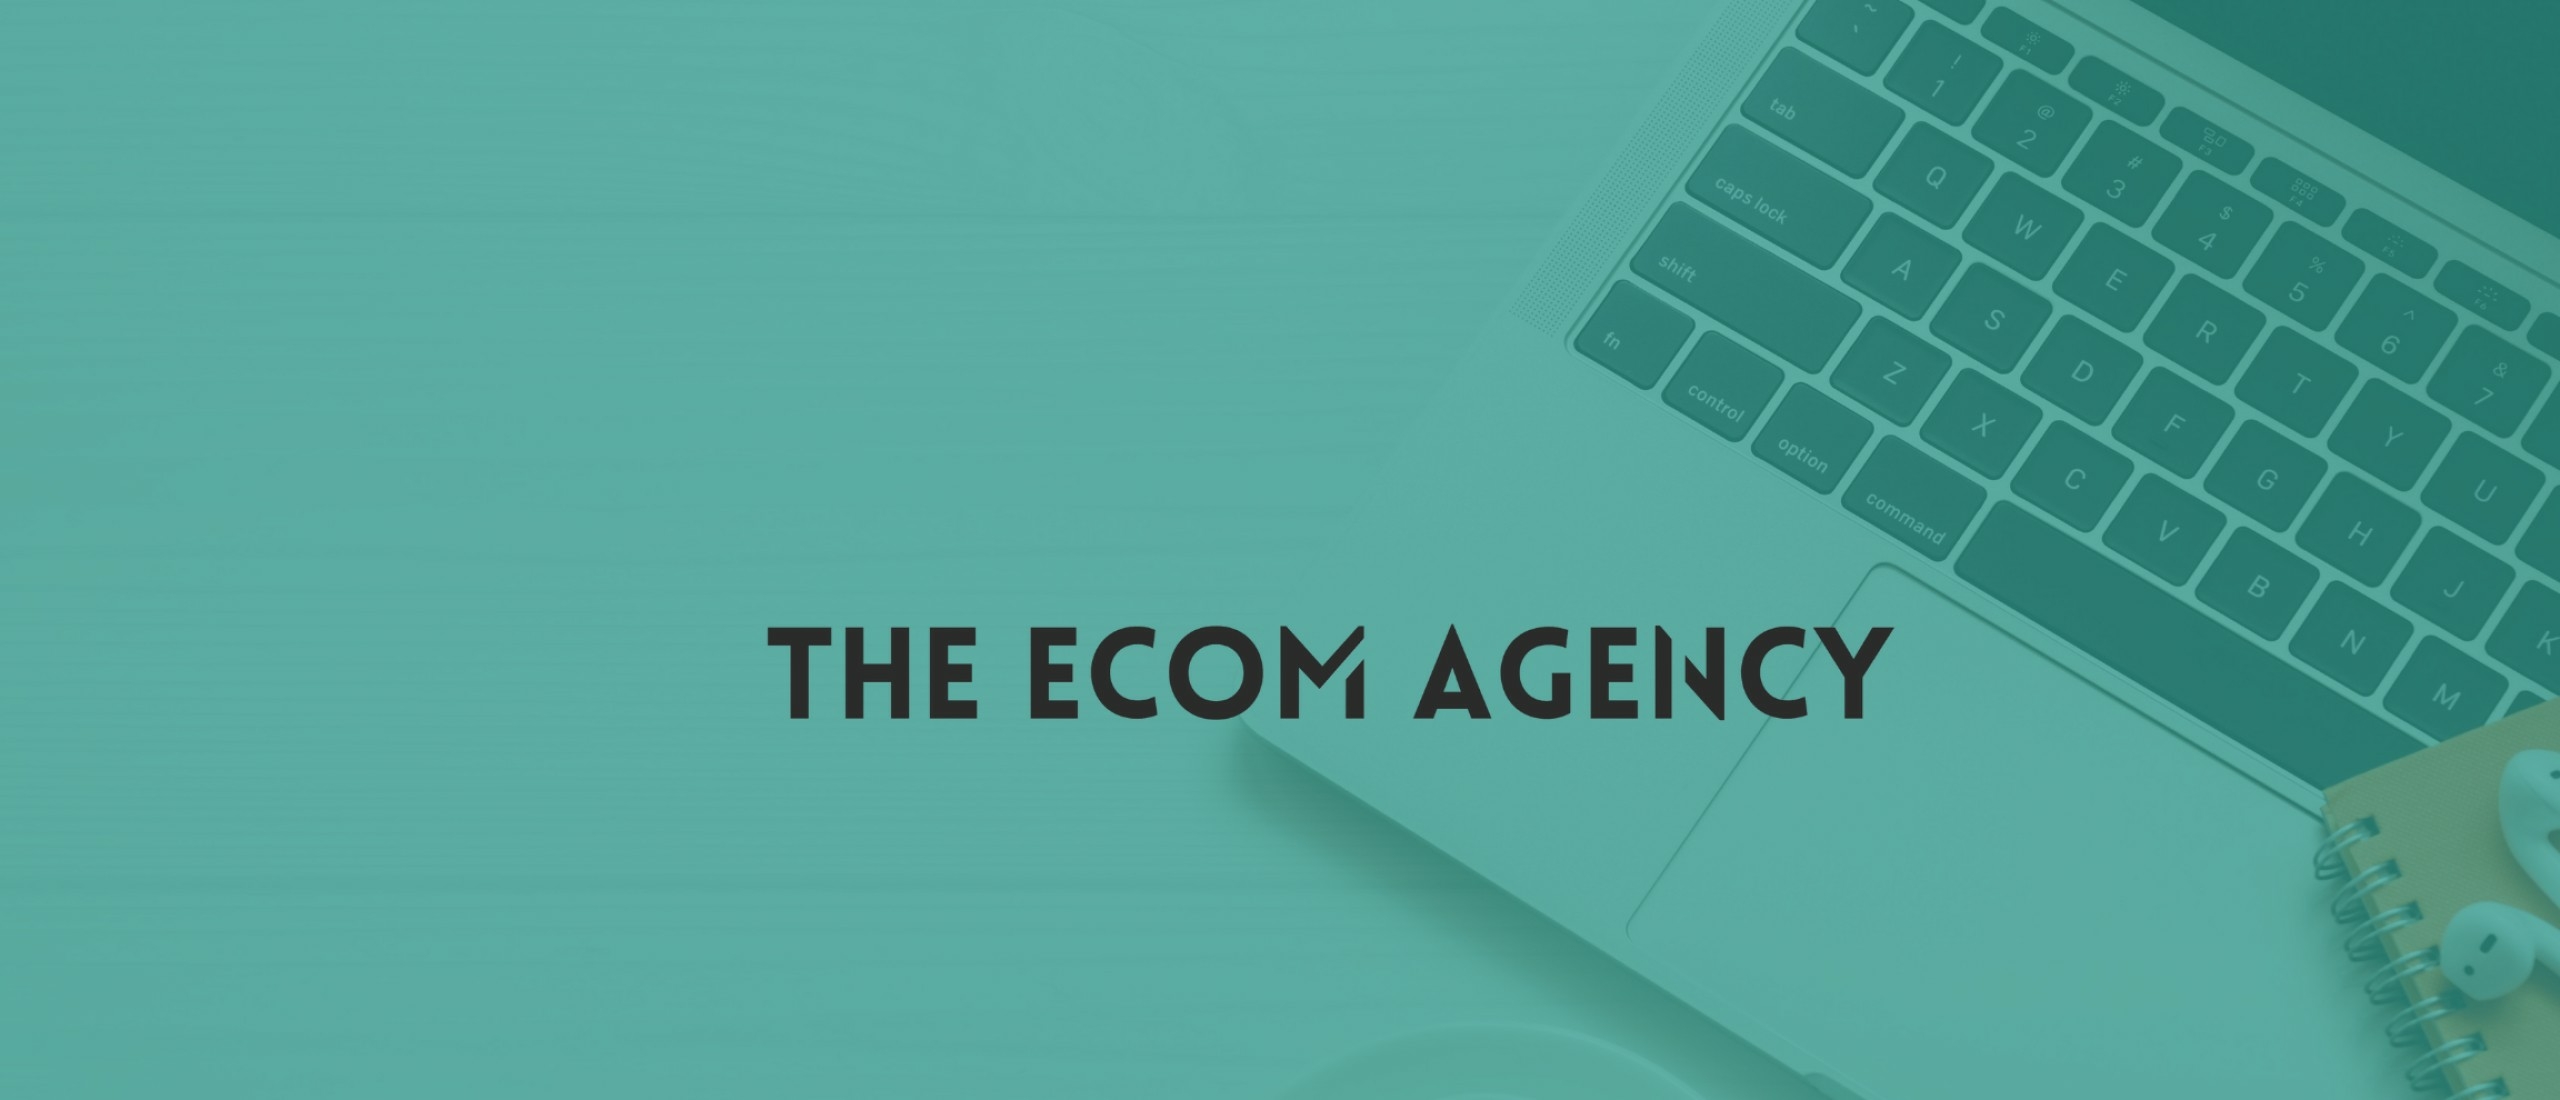 The Ecom Agency